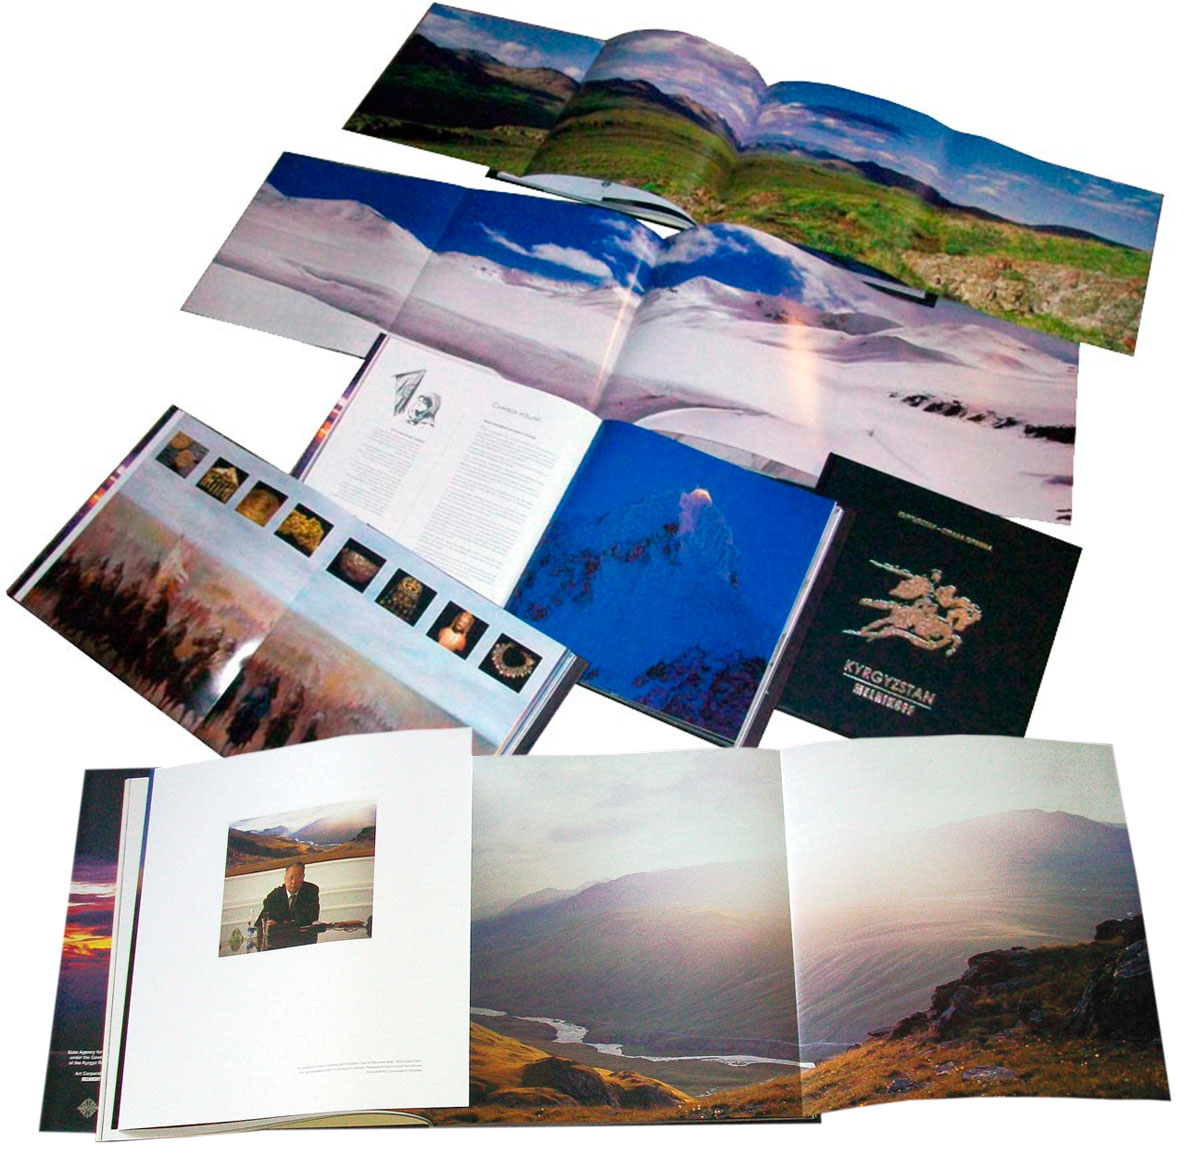 MELNIKOFF Дайджест. Экстра-класса фотоальбом «Земля киргизов», изданный компанией Melnikoff, Inc., в 2009 году по заказу правительства Кыргызской Республики.